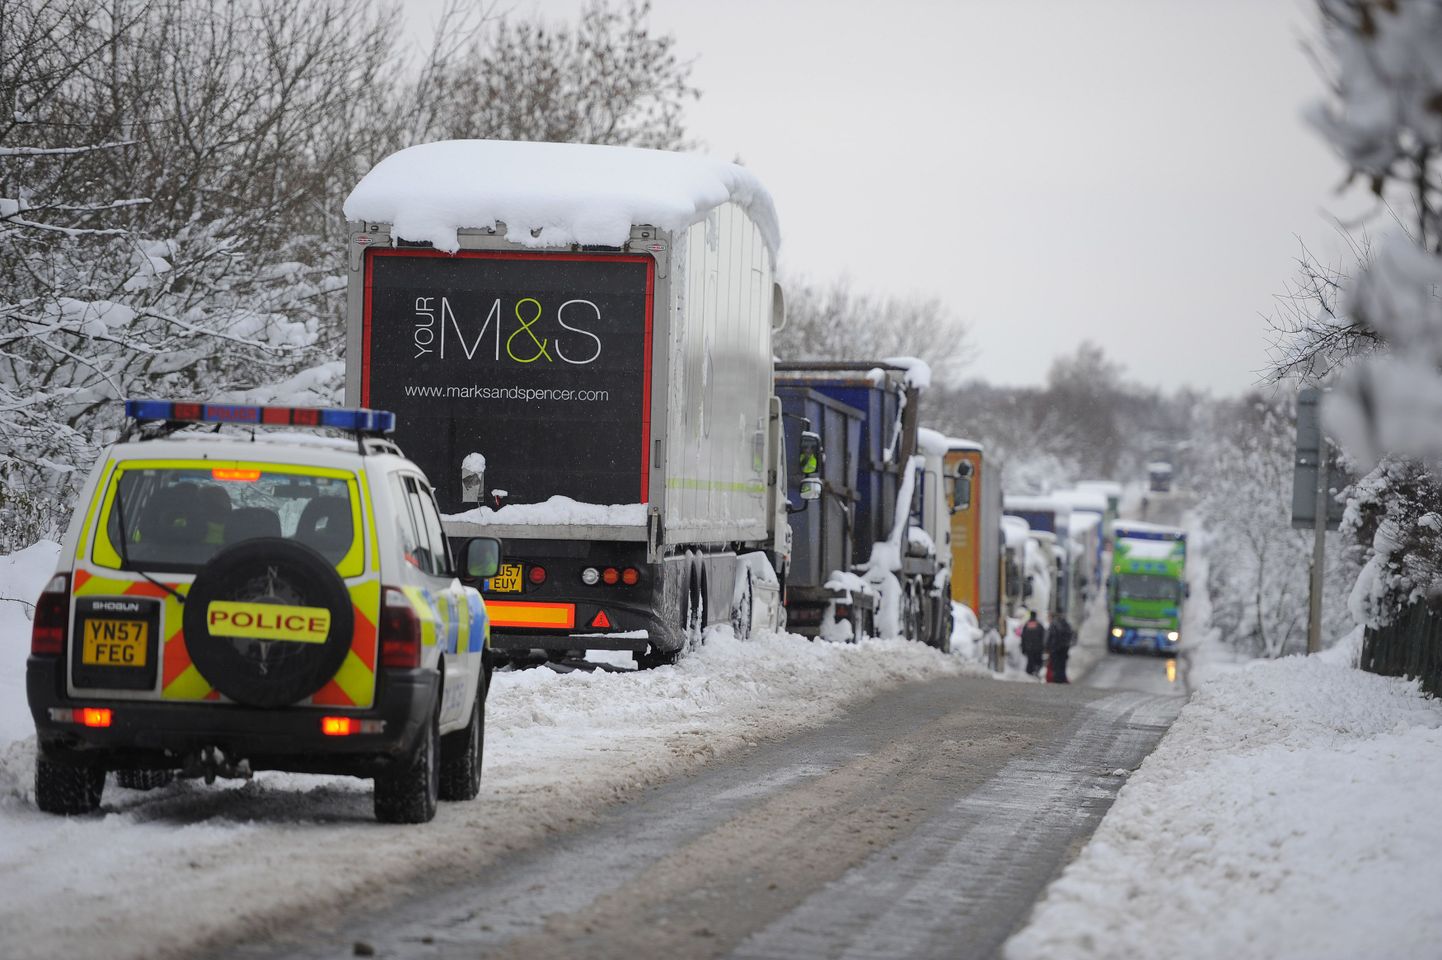 Põhja-Inglismaal maanteel A57 Worksopi lähistel jäid sõidukid kaheks päevaks kinni. Ligi 200 inimese päästmiseks läks vaja mägedes tegutsevat päästerühma.